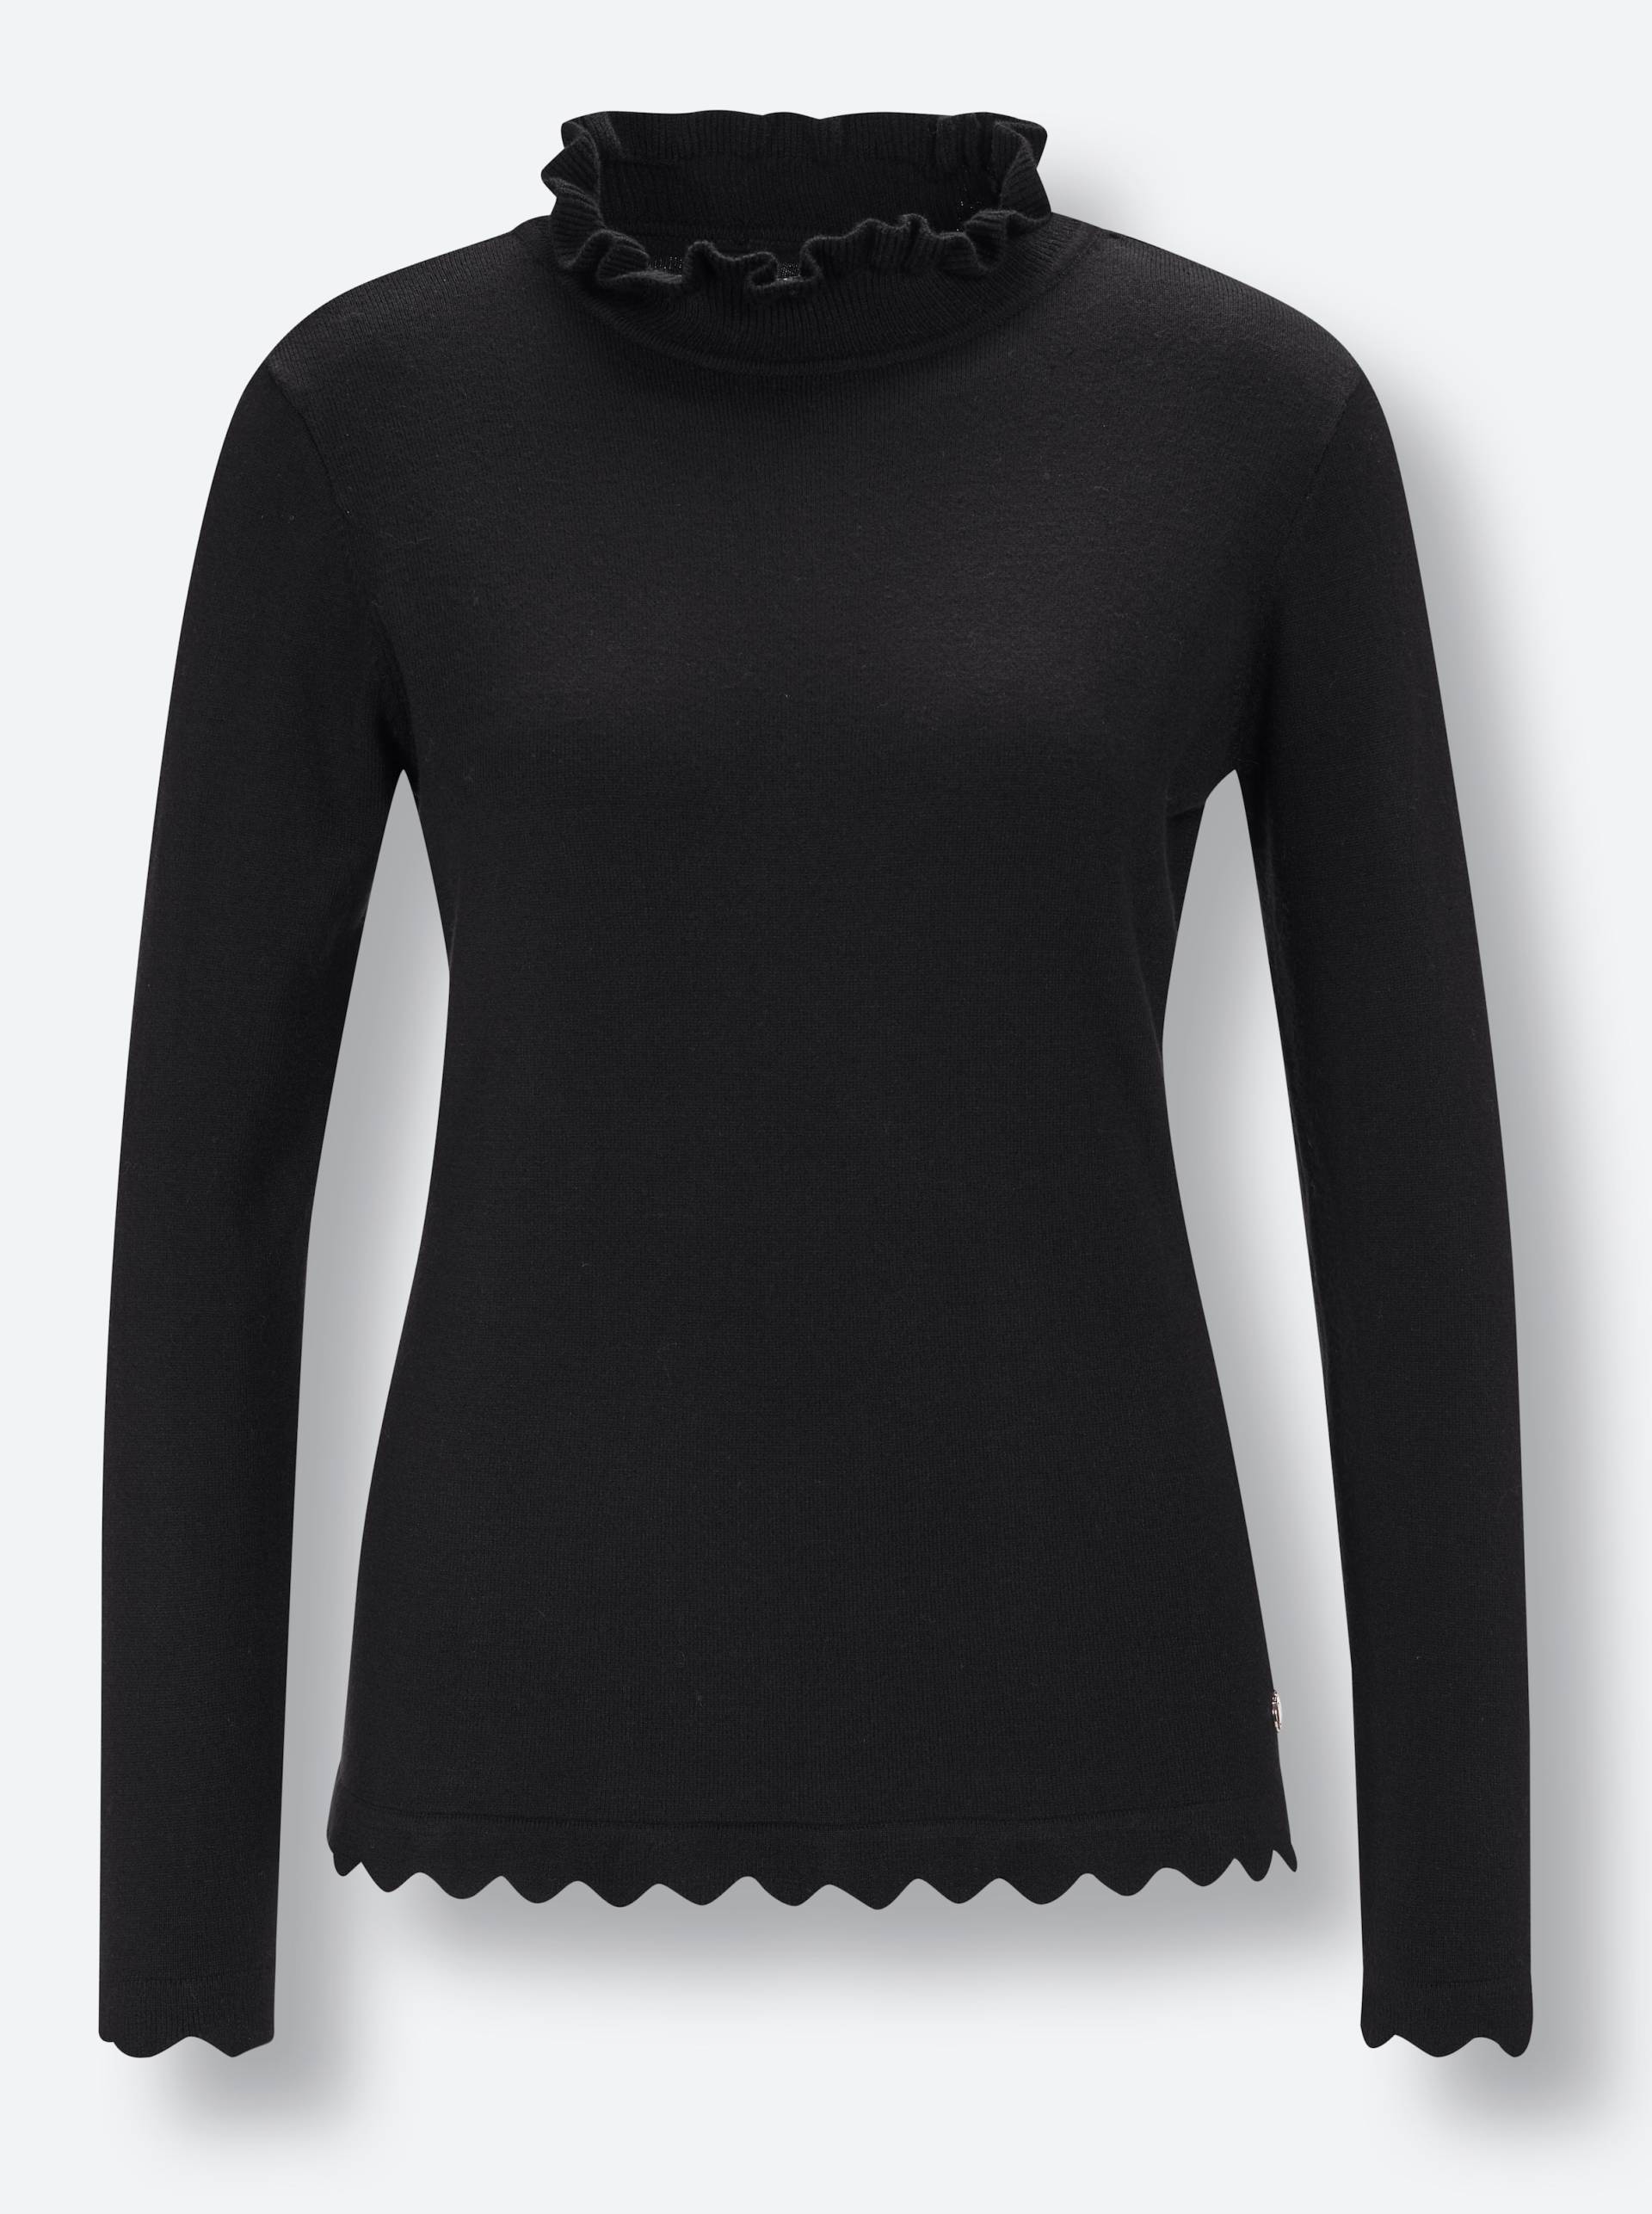 Viskose-Modal-Pullover in schwarz von CREATION L PREMIUM